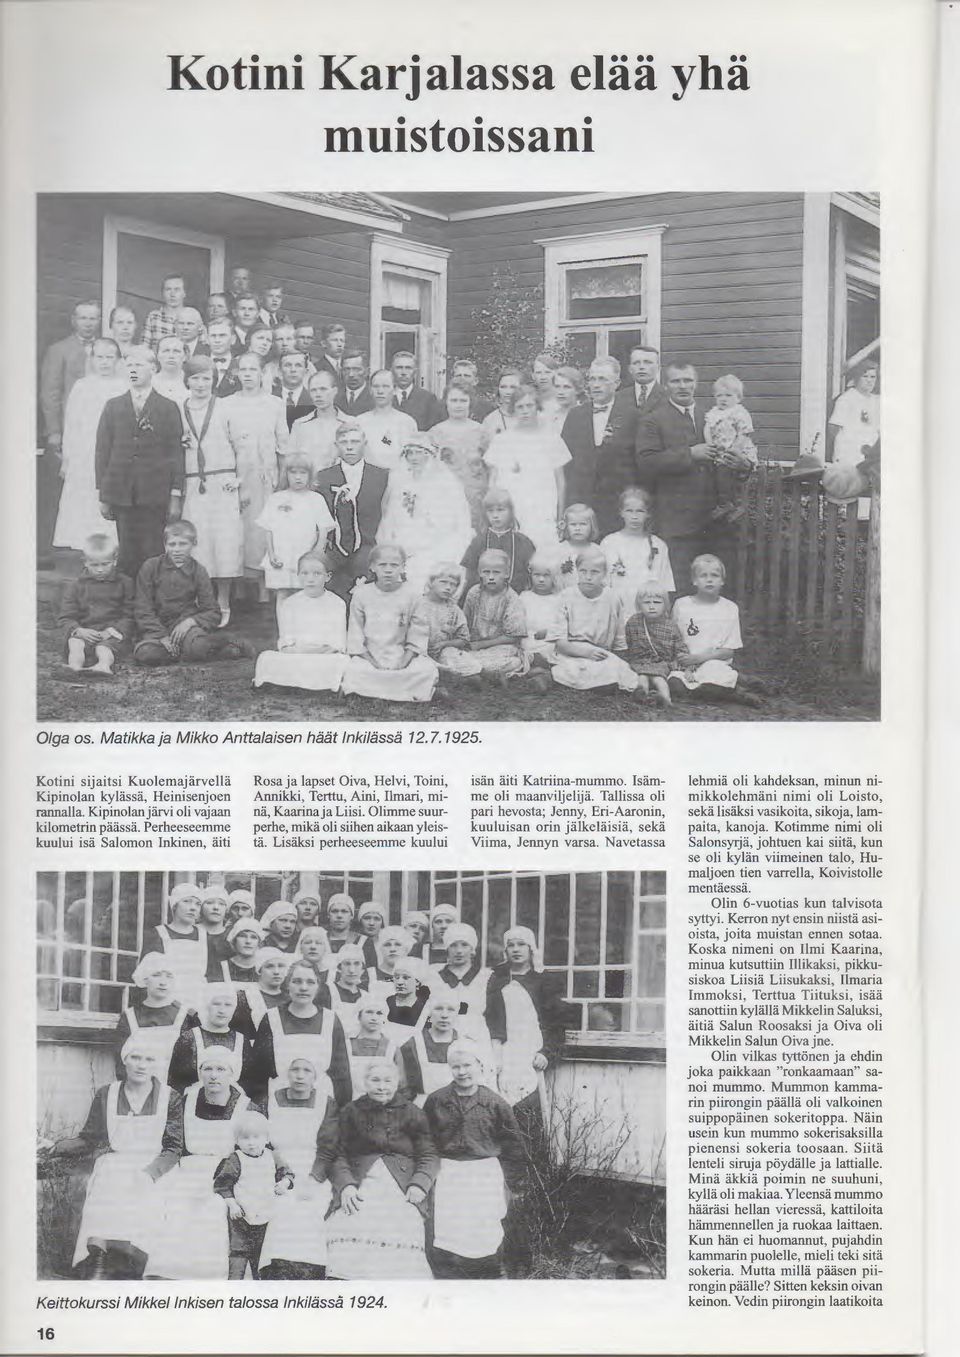 Olimme suurperhe, rnika oli siihen aikaan yleista. Lisaksi perheeseemme kuului Keittokurssi Mikkellnkisen talossa lnkilassa 1924. 16 isan aiti Katriina-mummo.!samme oli maanviljelija.